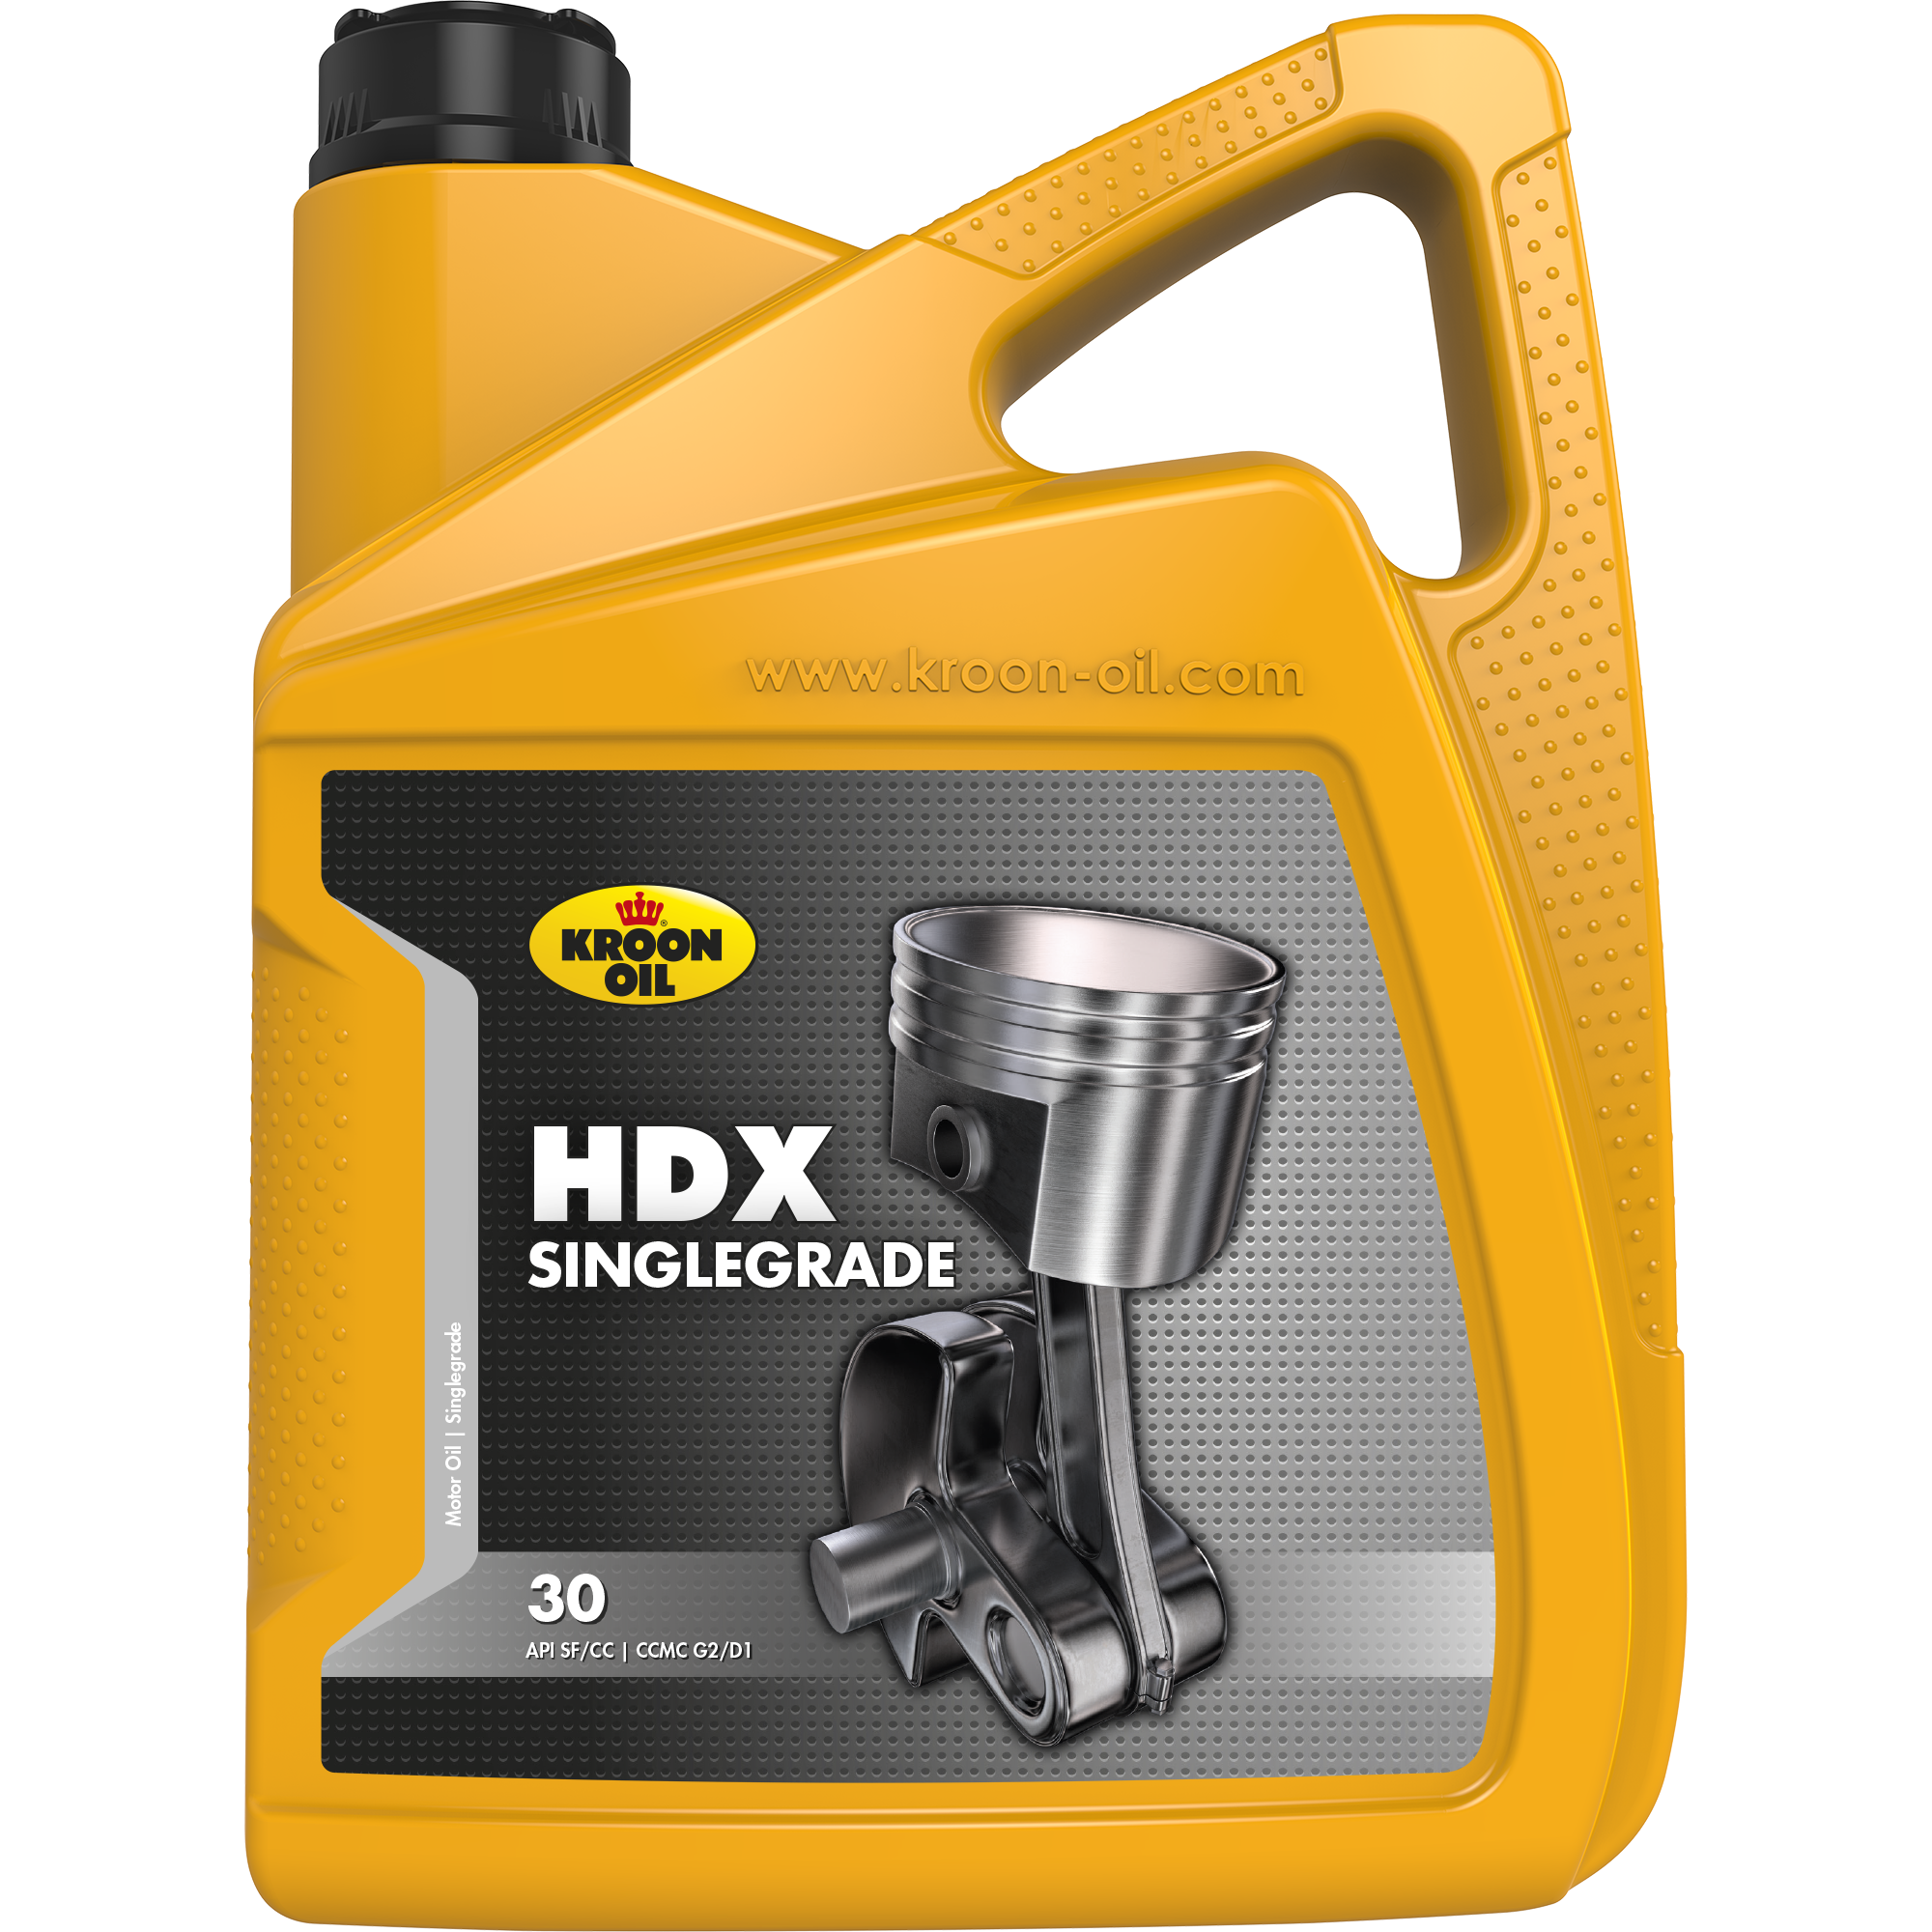 31110-5 HDX 30 is een singlegrade motorolie gebaseerd op hoogwaardige solvent geraffineerde basisoliën.